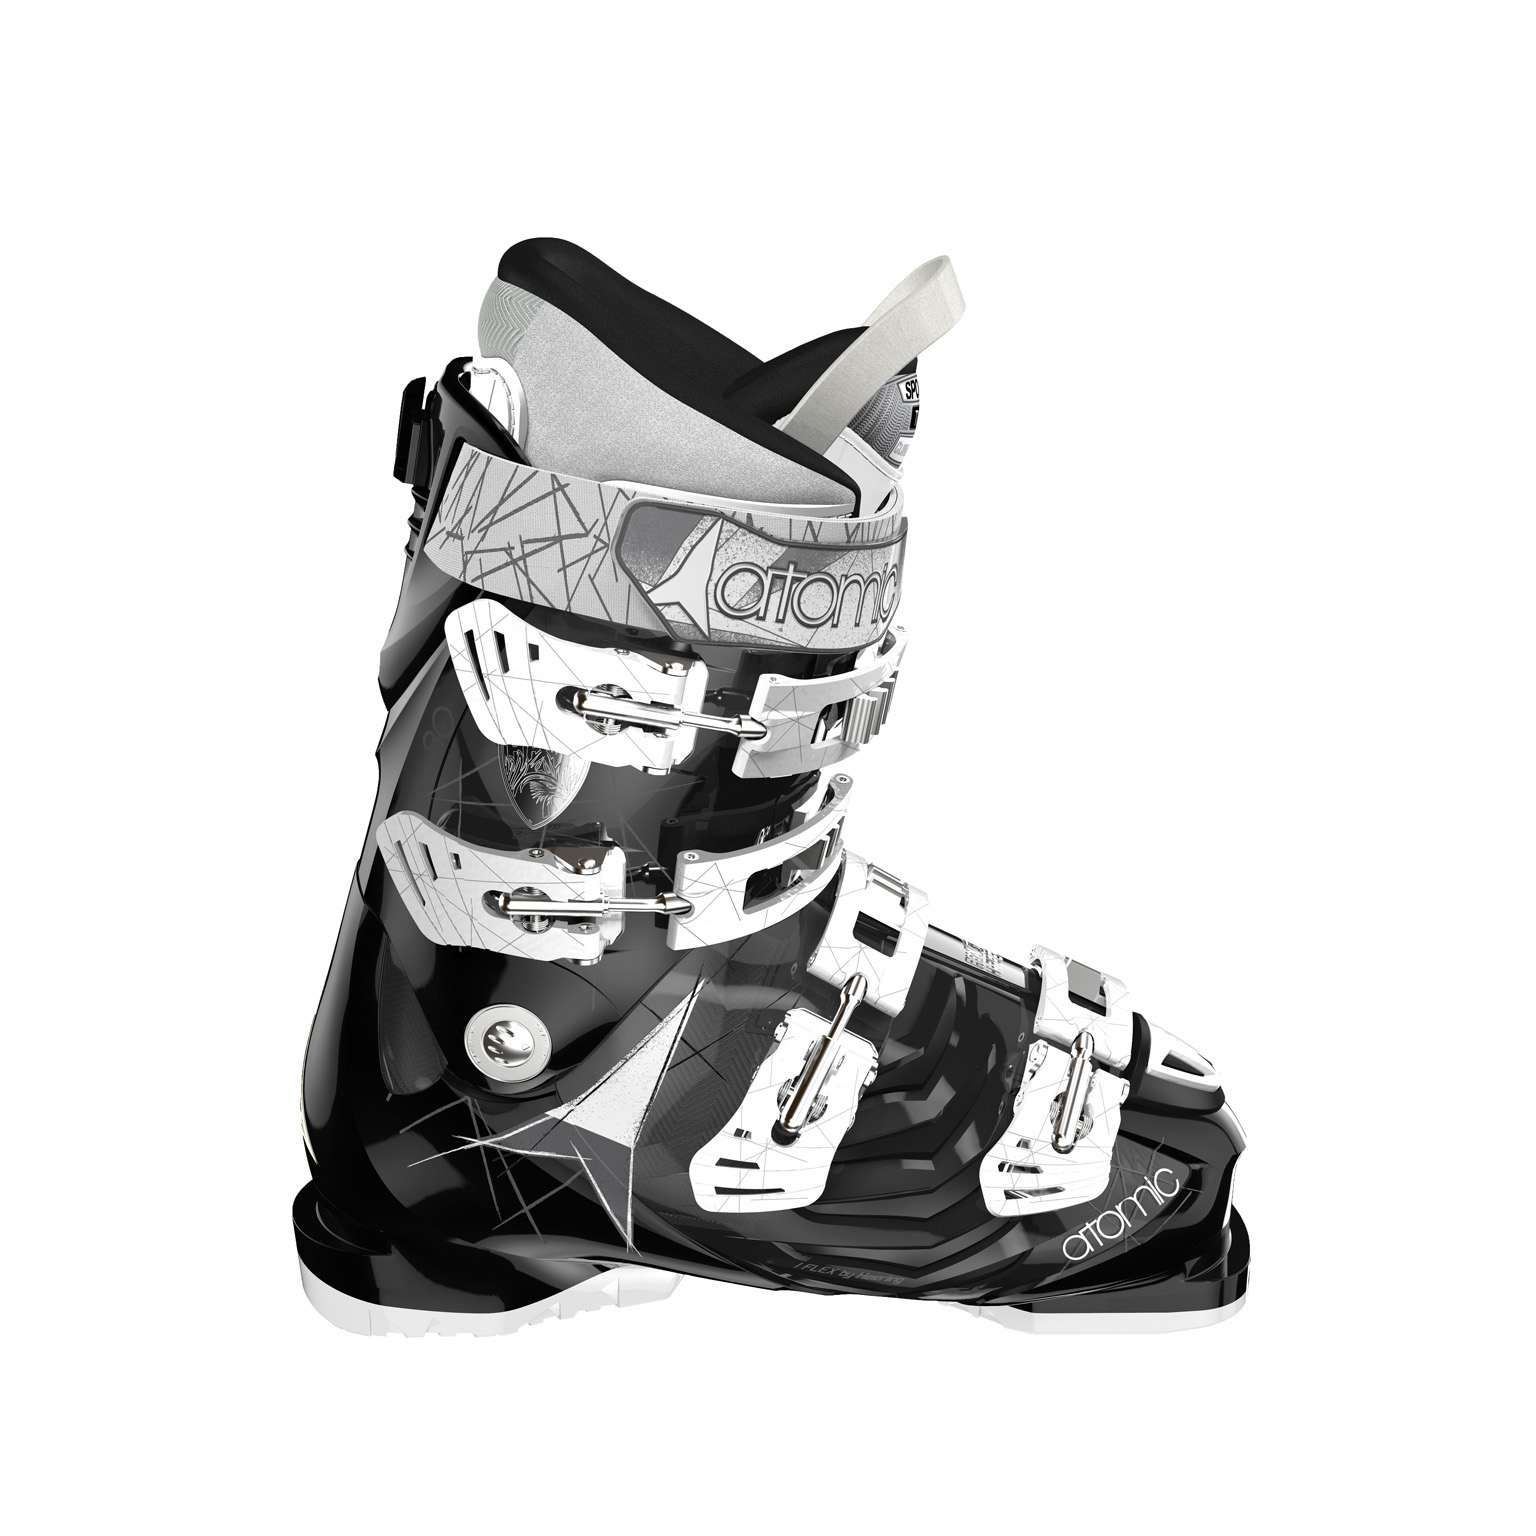 Lange RX 80 W LV GW Ski Boots - Women's - Black - 25.5